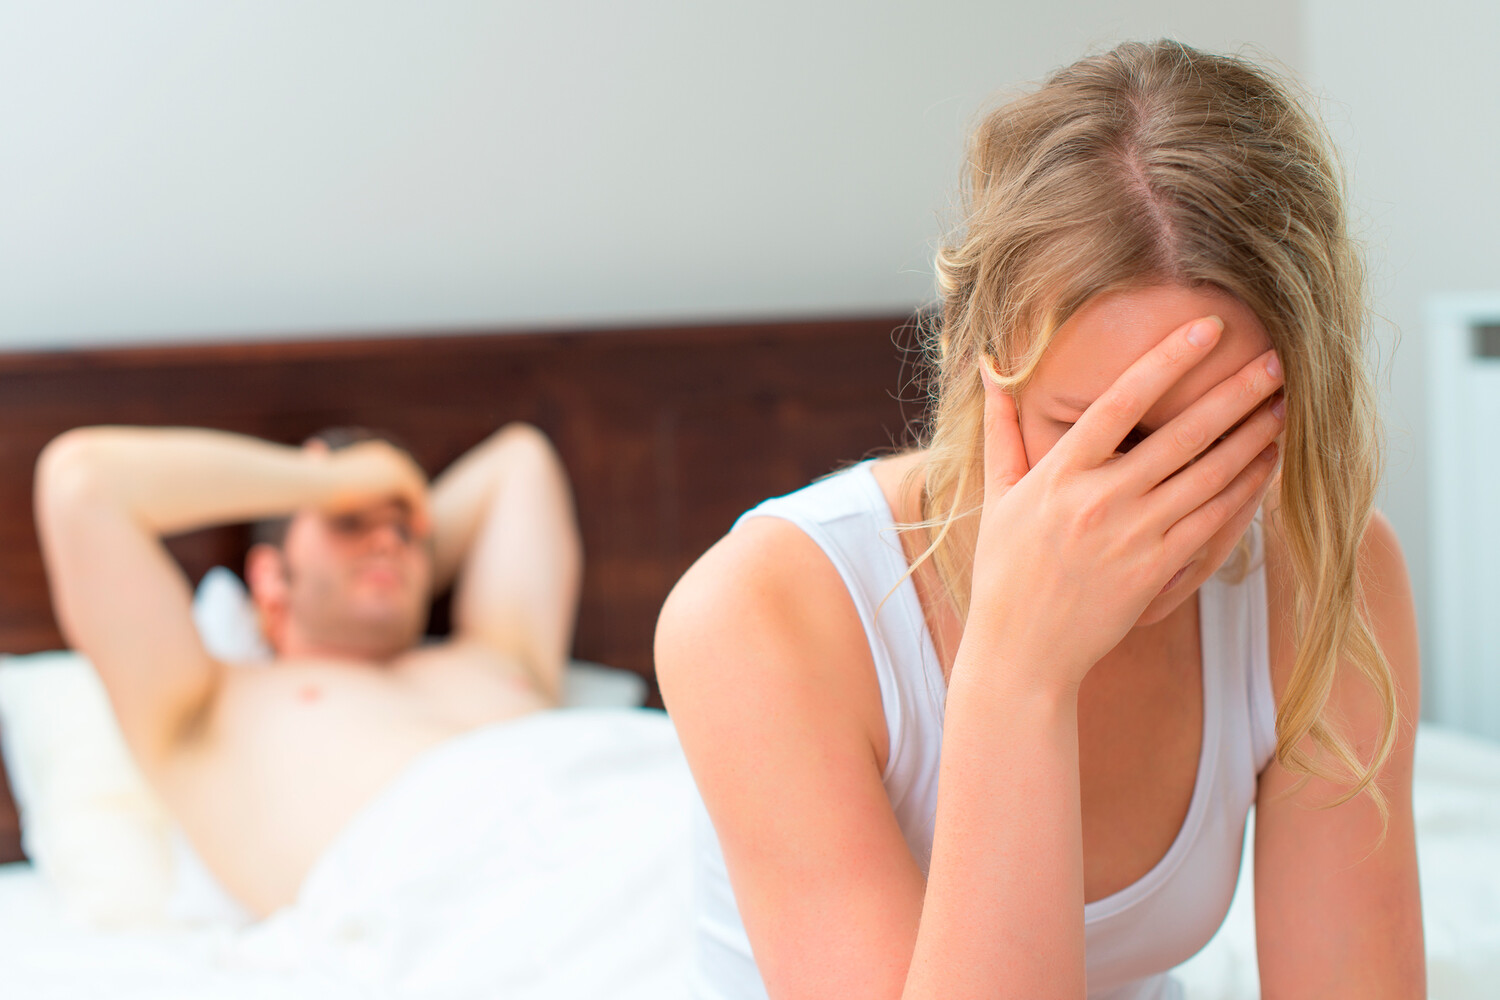 Насколько часто женщины получают удовольствие от секса? - 18 ответов на форуме lavandasport.ru ()